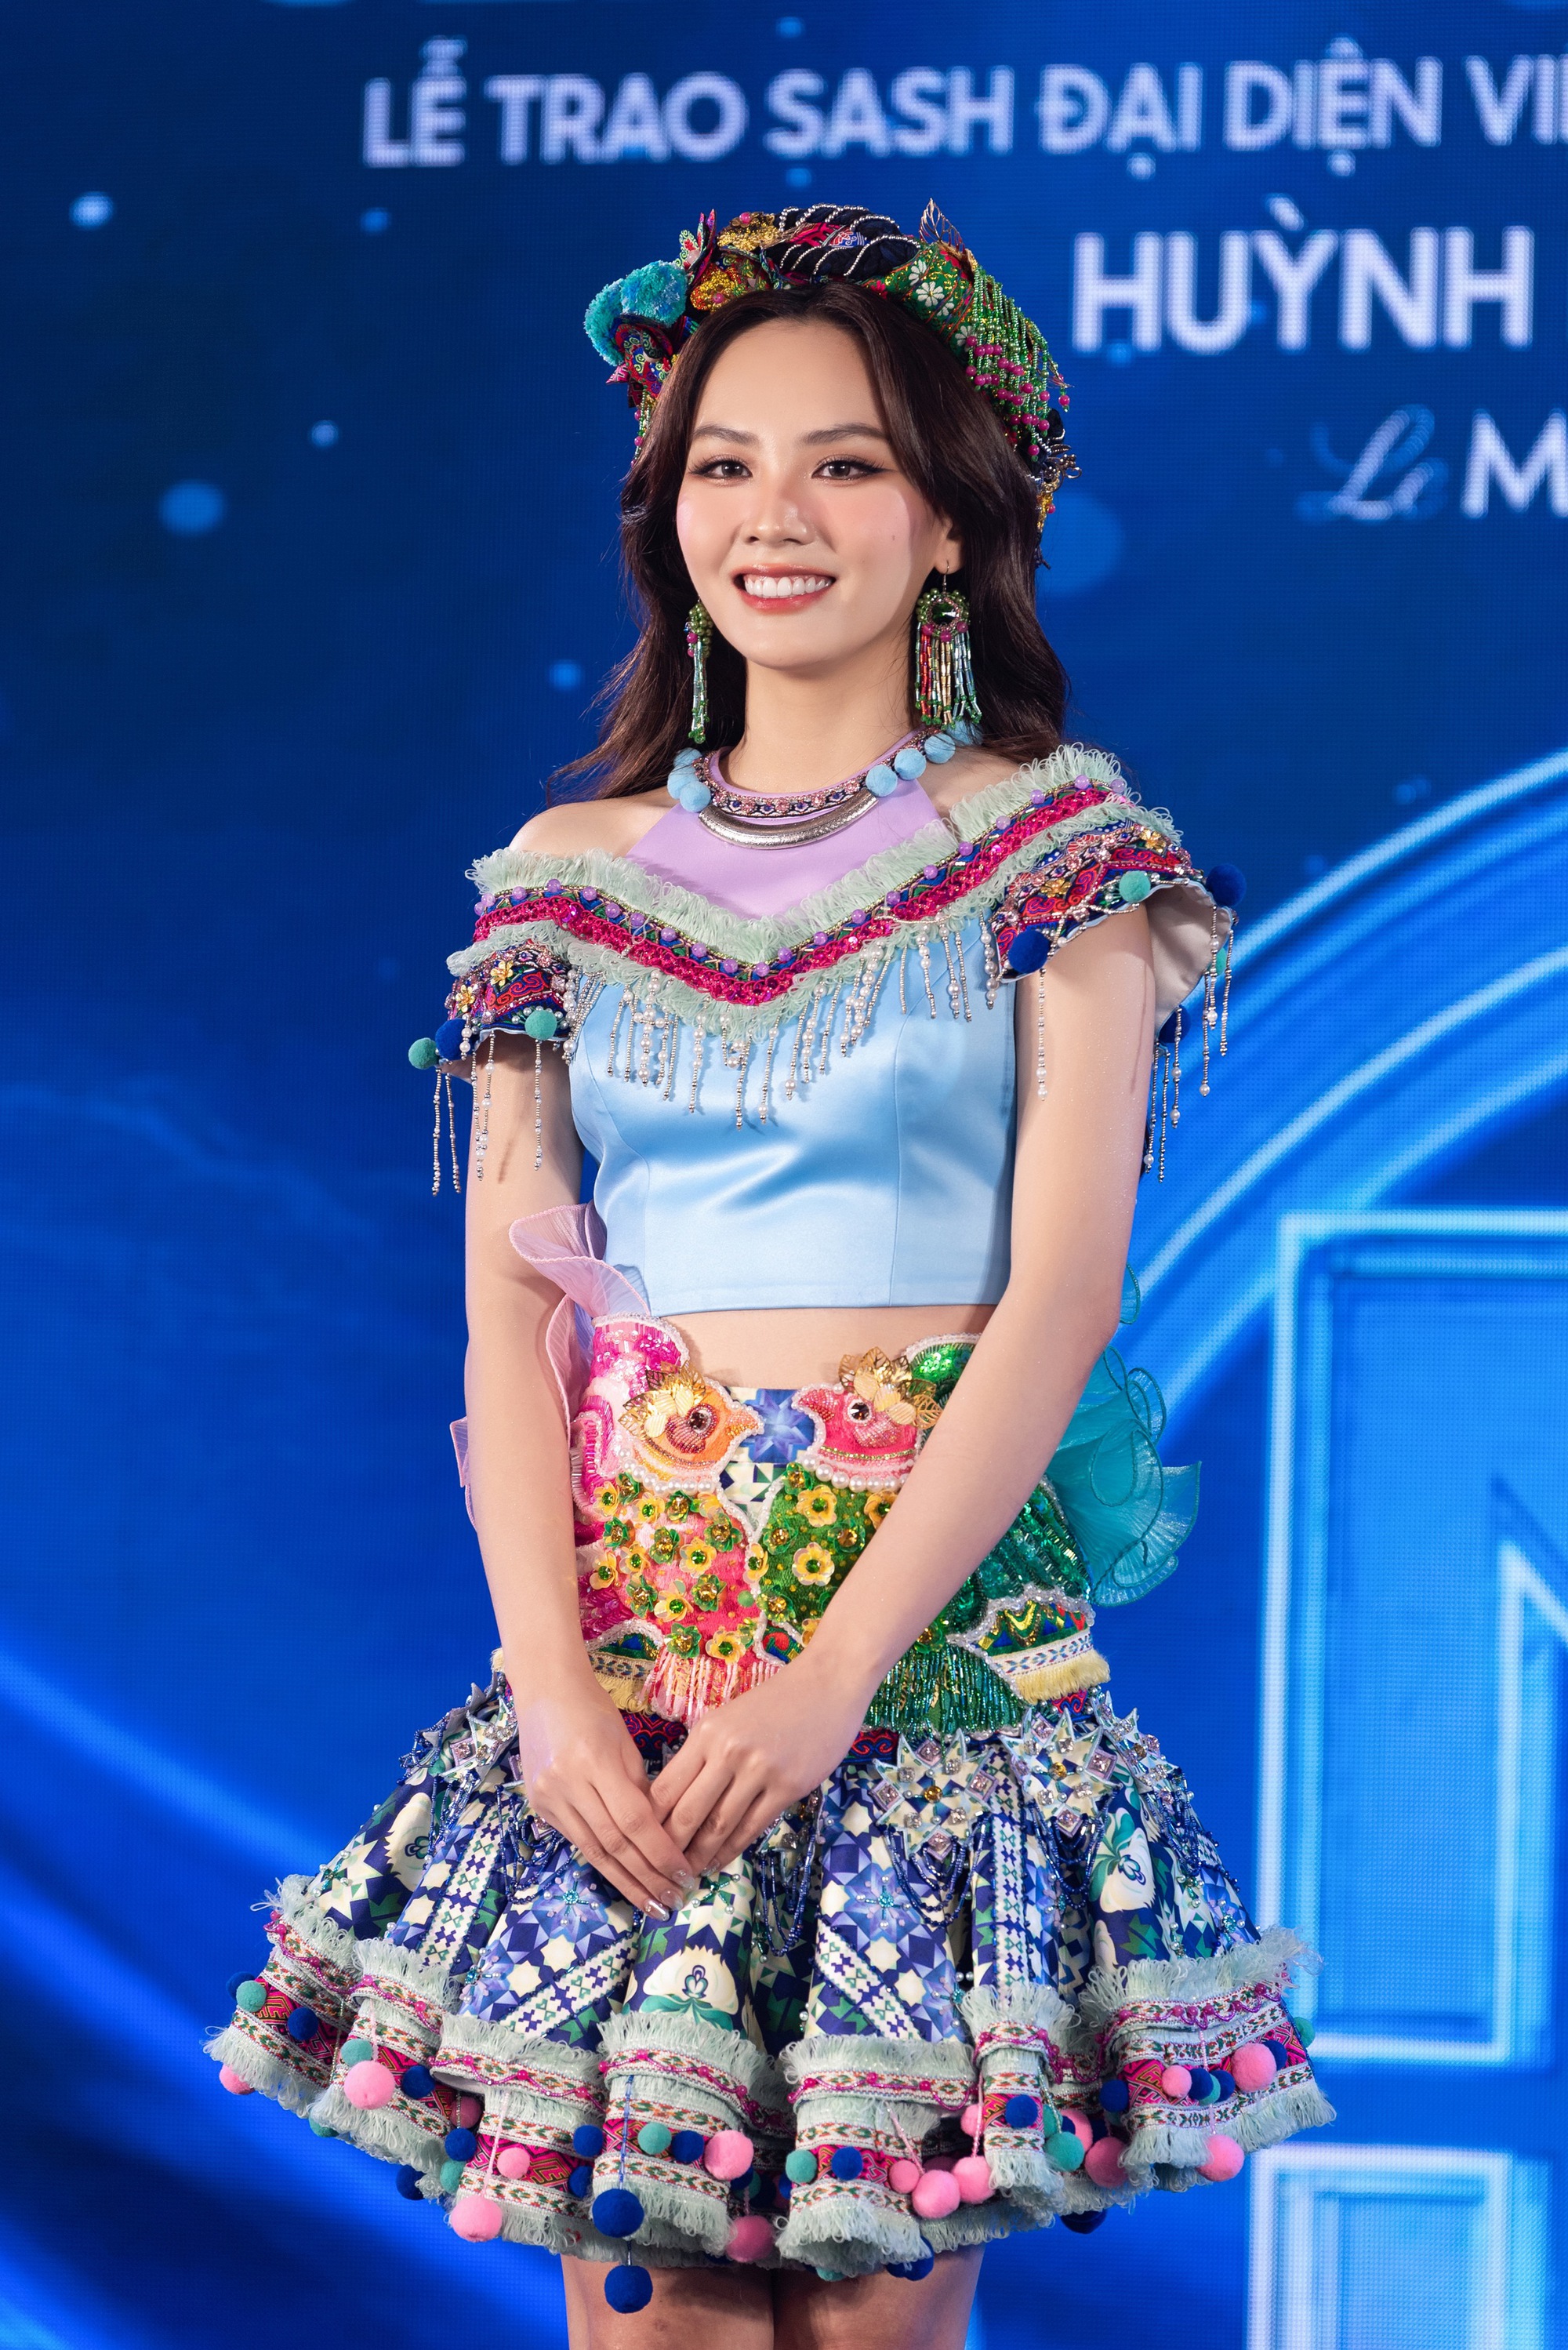 Hoa hậu Mai Phương công bố loạt váy áo tại Miss World, 1 nhân vật đặc biệt và dàn Hậu đình đám góp mặt- Ảnh 8.